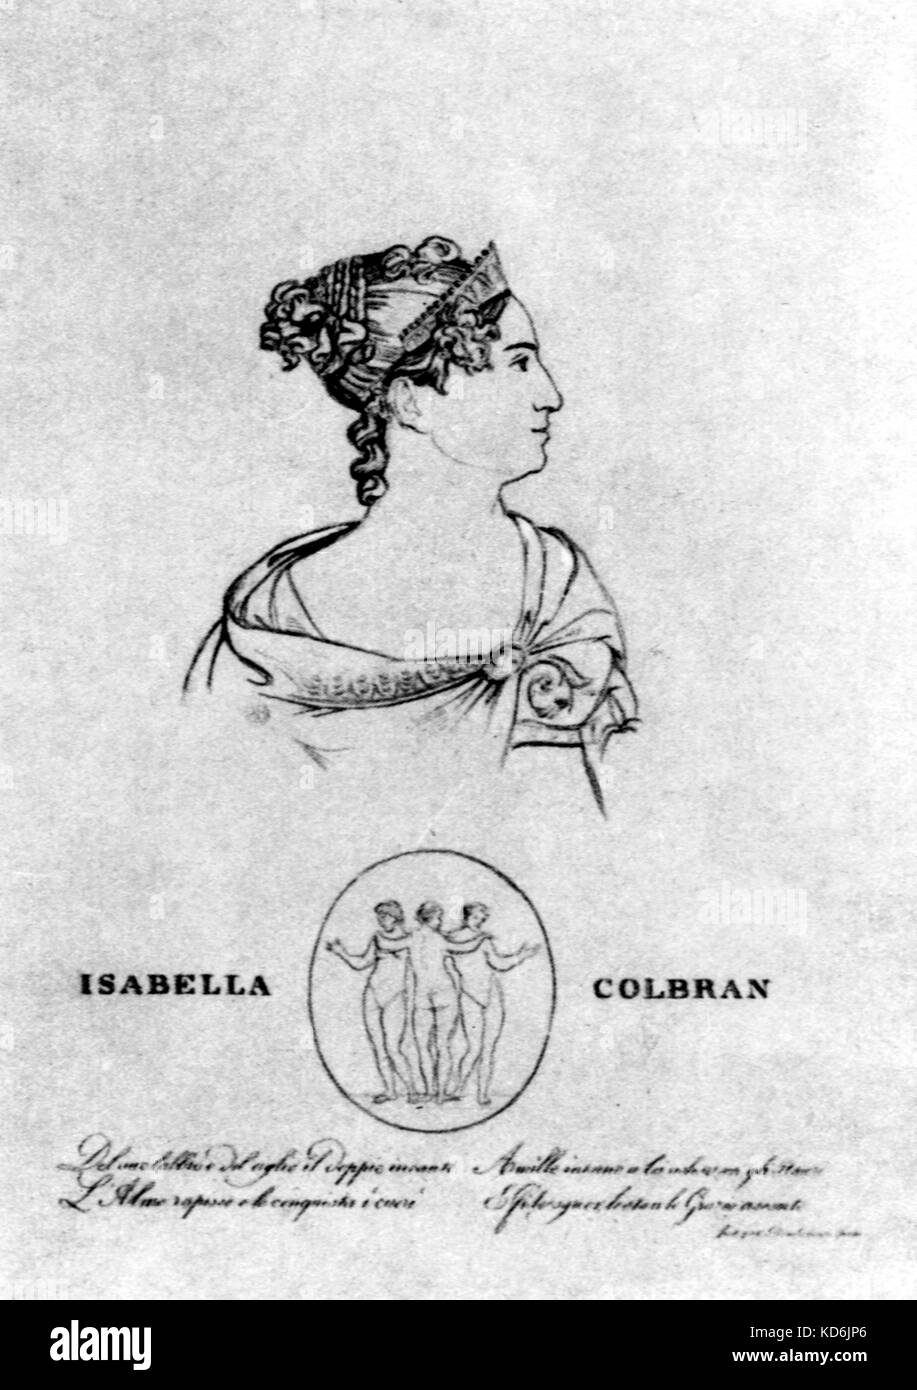 Isabella Colbran, Profil Portrait im klassischen Stil. Spanische Sopranistin (1785-1845). Isabella Colbran verheiratet Rossini im Jahre 1822. Sie schuf führenden Sopran Rollen in einer Reihe von seinen Opern. Rossini - Italienischer Komponist (1792-1868) Stockfoto